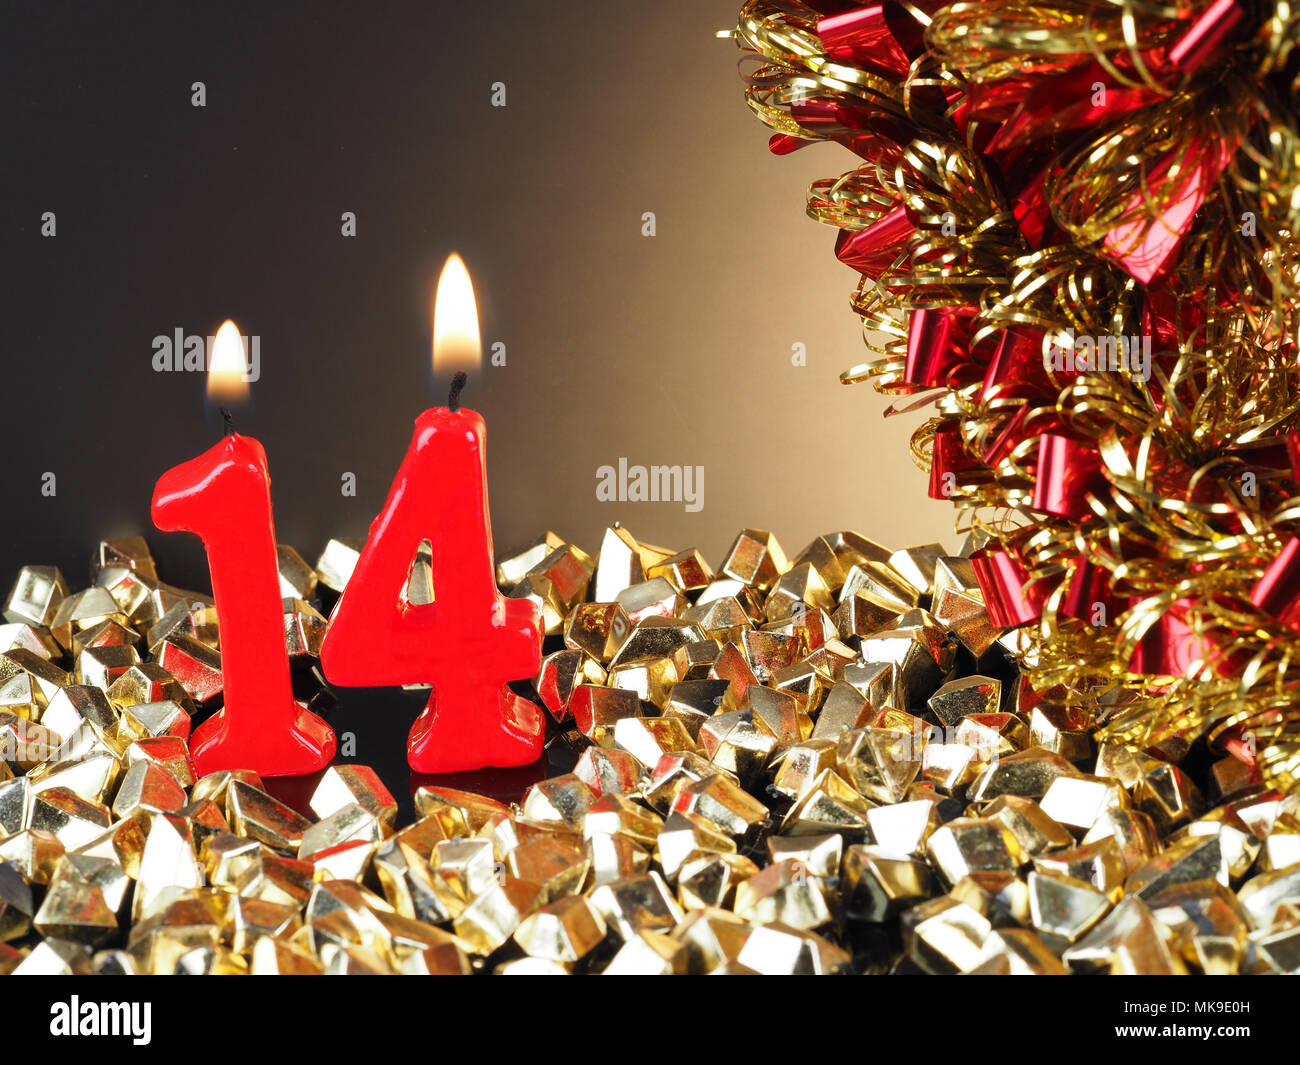 Zusammenfassung Hintergrund für Geburtstag oder Jubiläum. Rote Kerzen, Nr. 14. Stockfoto